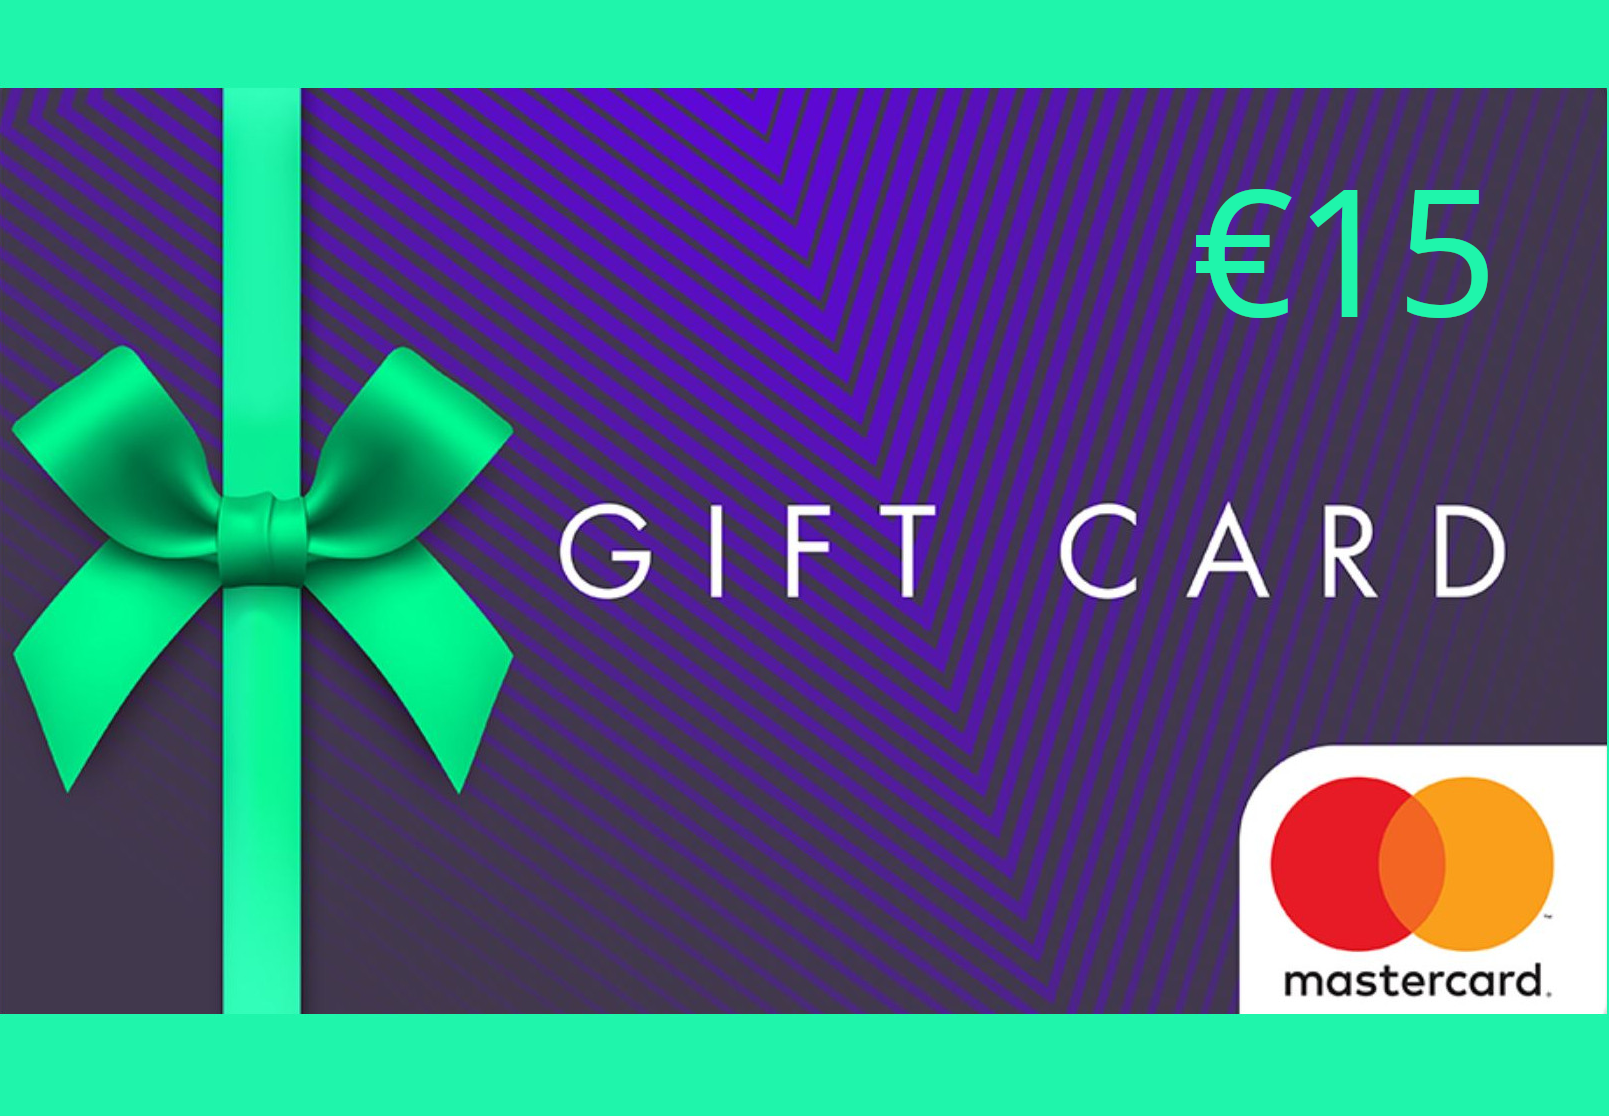 Mastercard Gift Card €15 EU